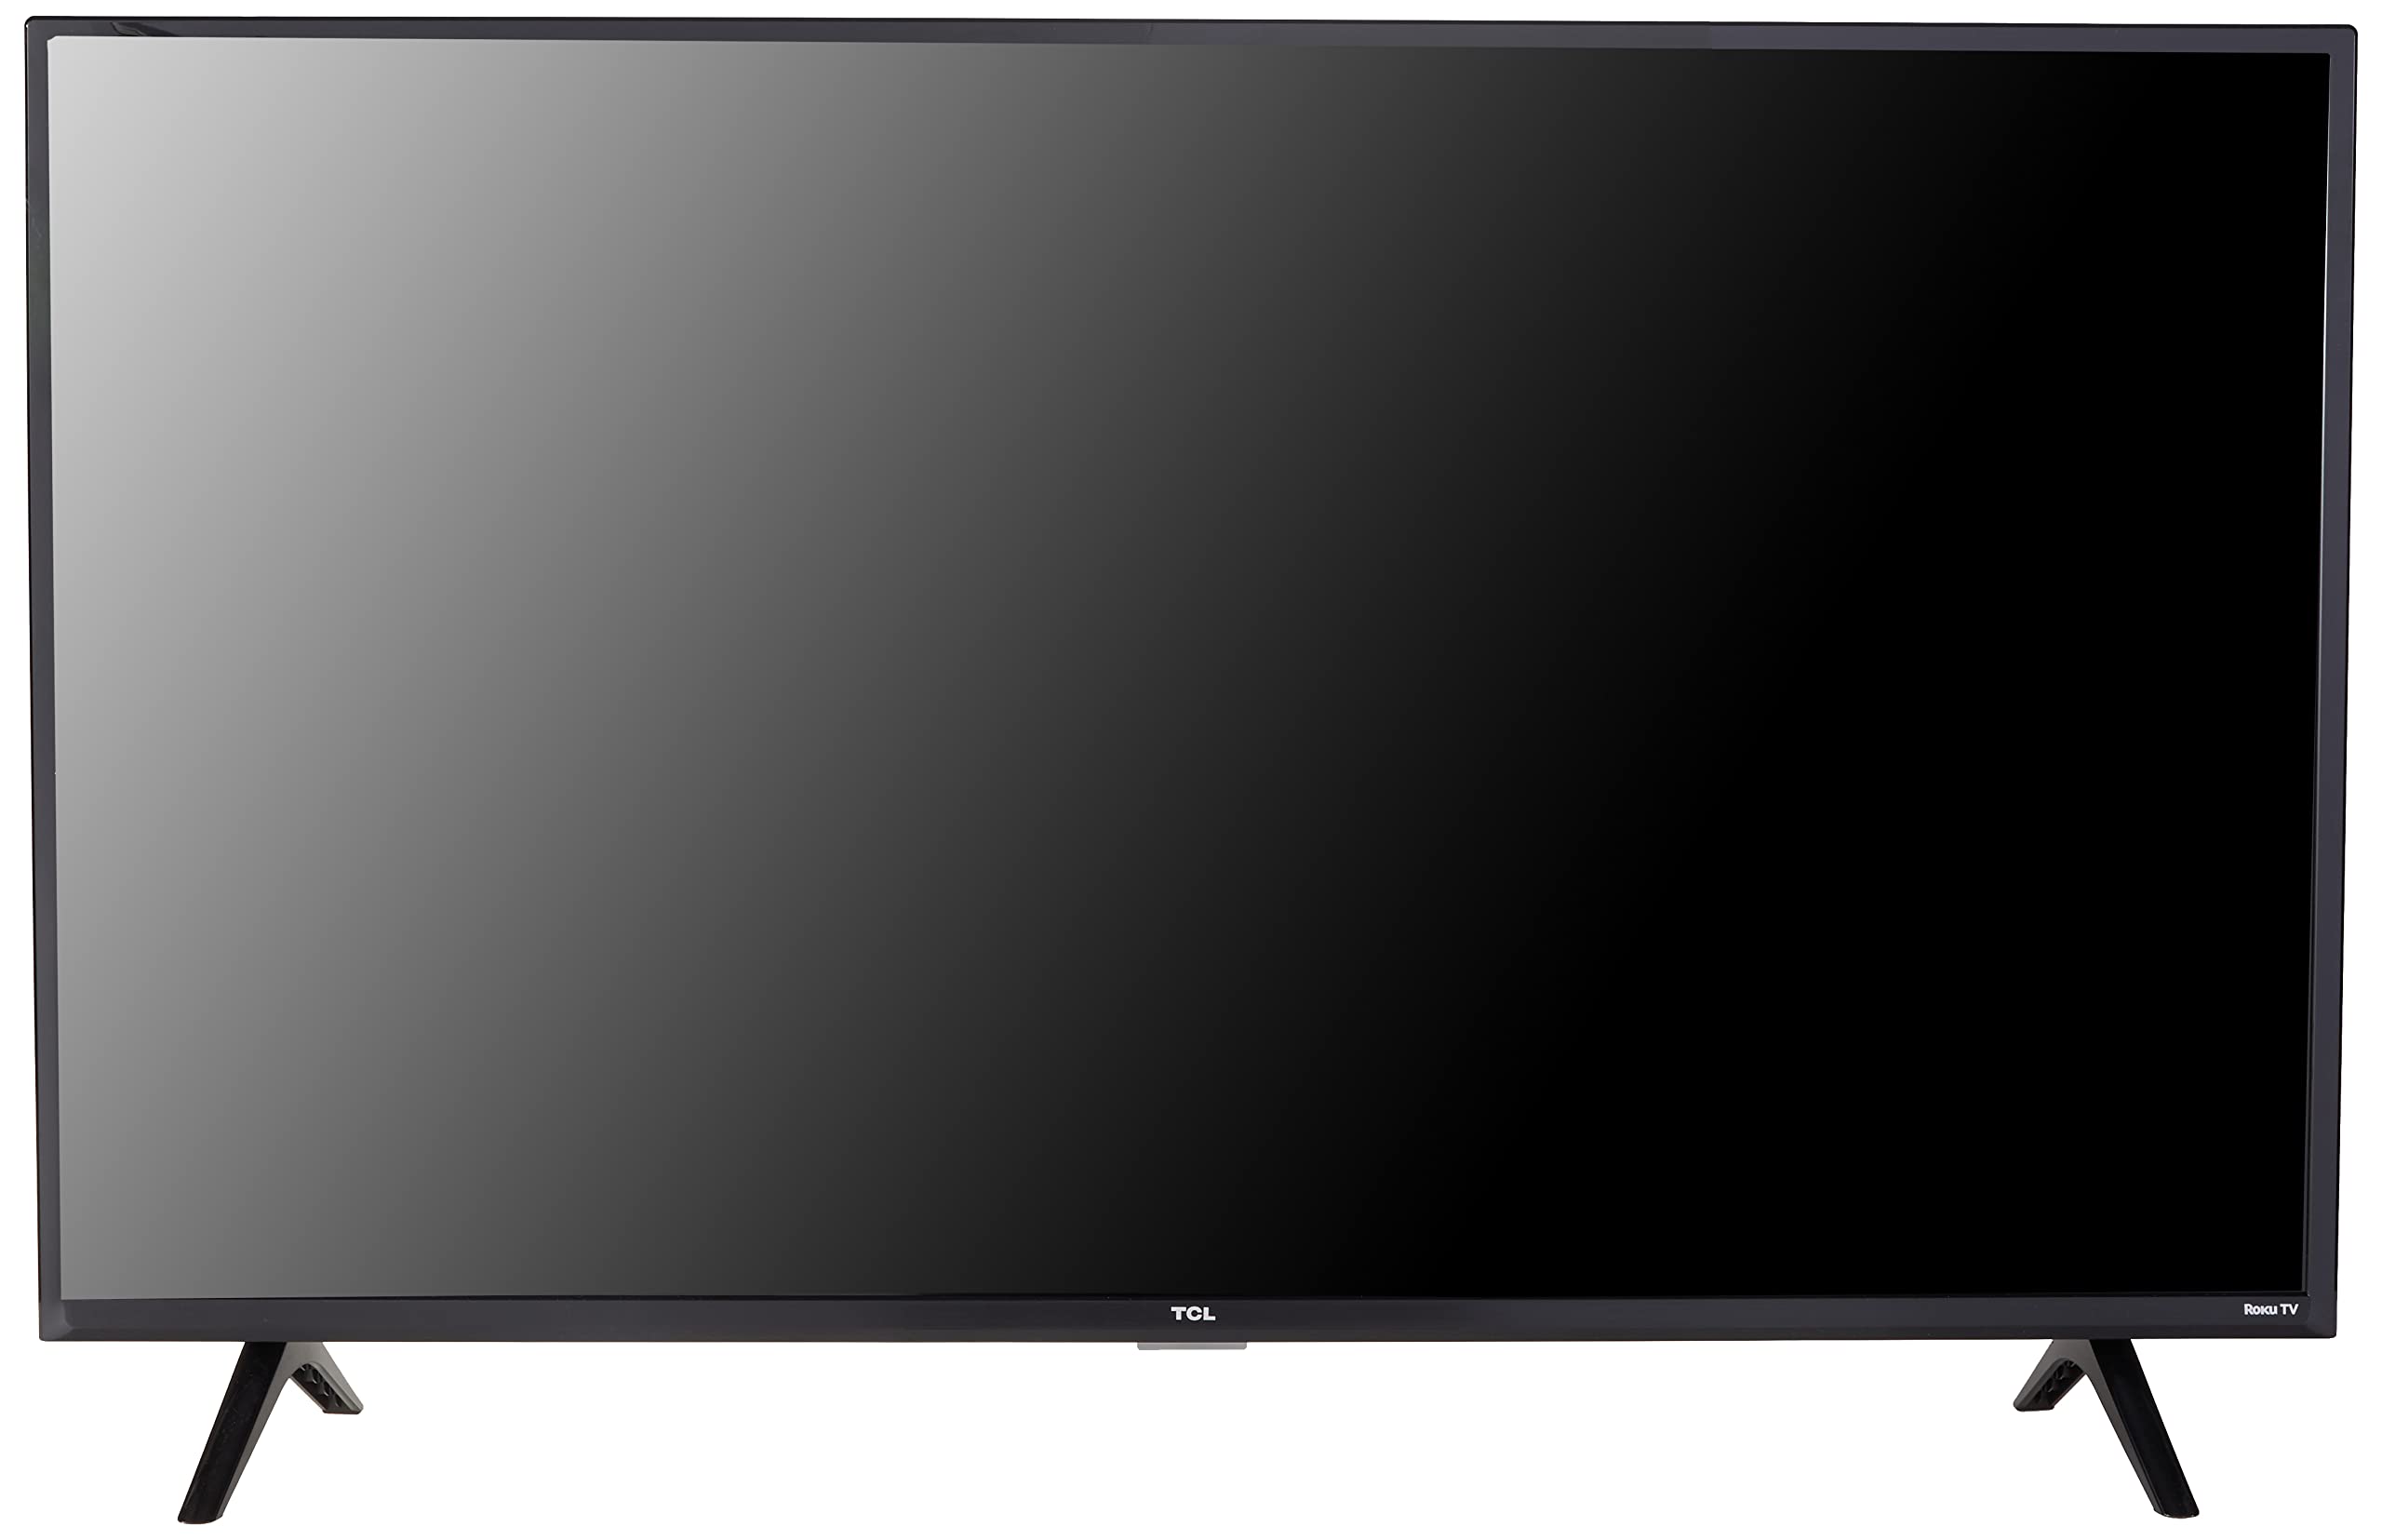 TCL Smart Roku TV LED Full HD 1080p serie 3 de 40' - 40S355